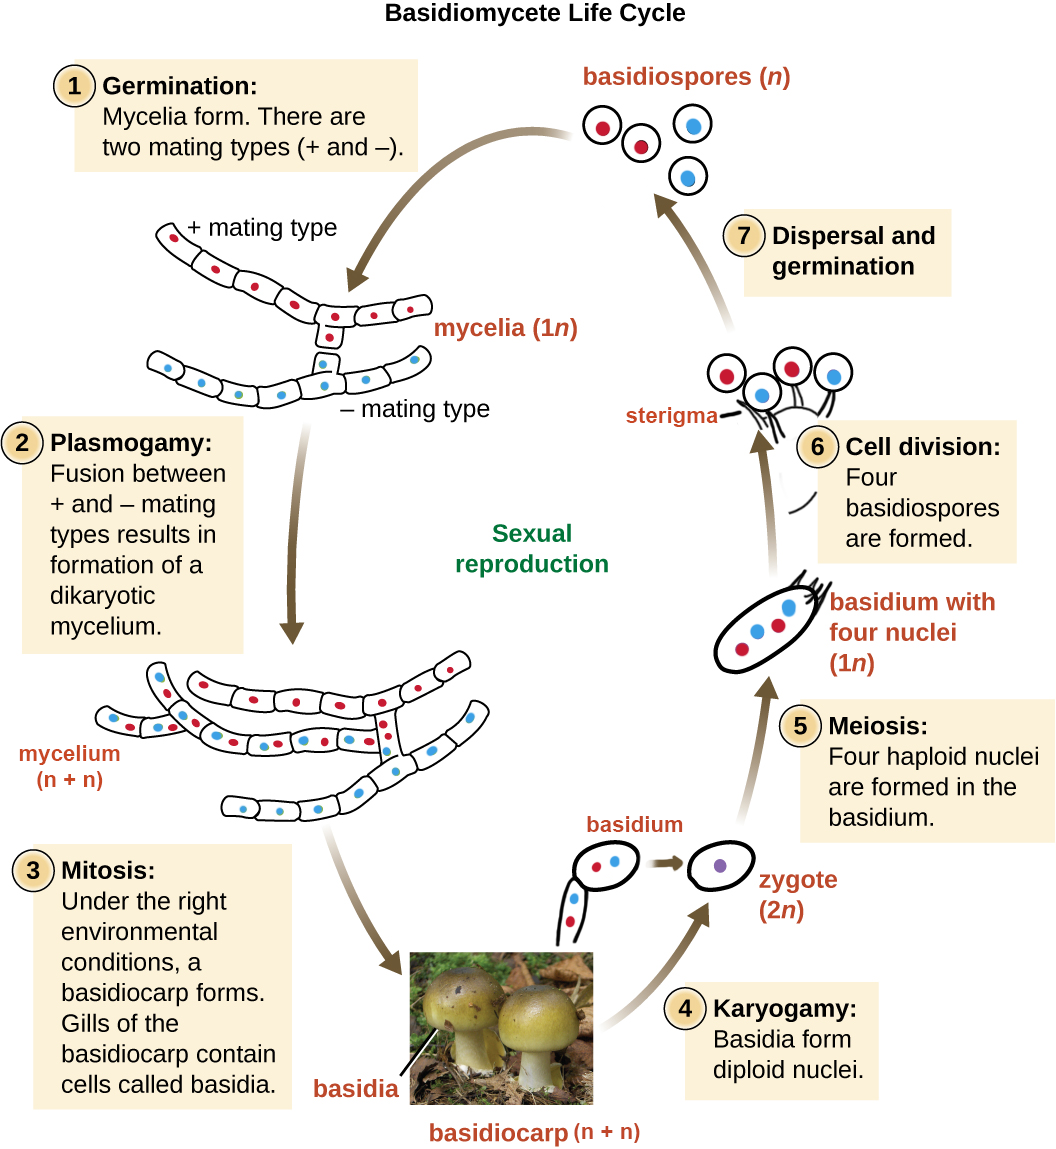 Basidiomycete life cycle diagram